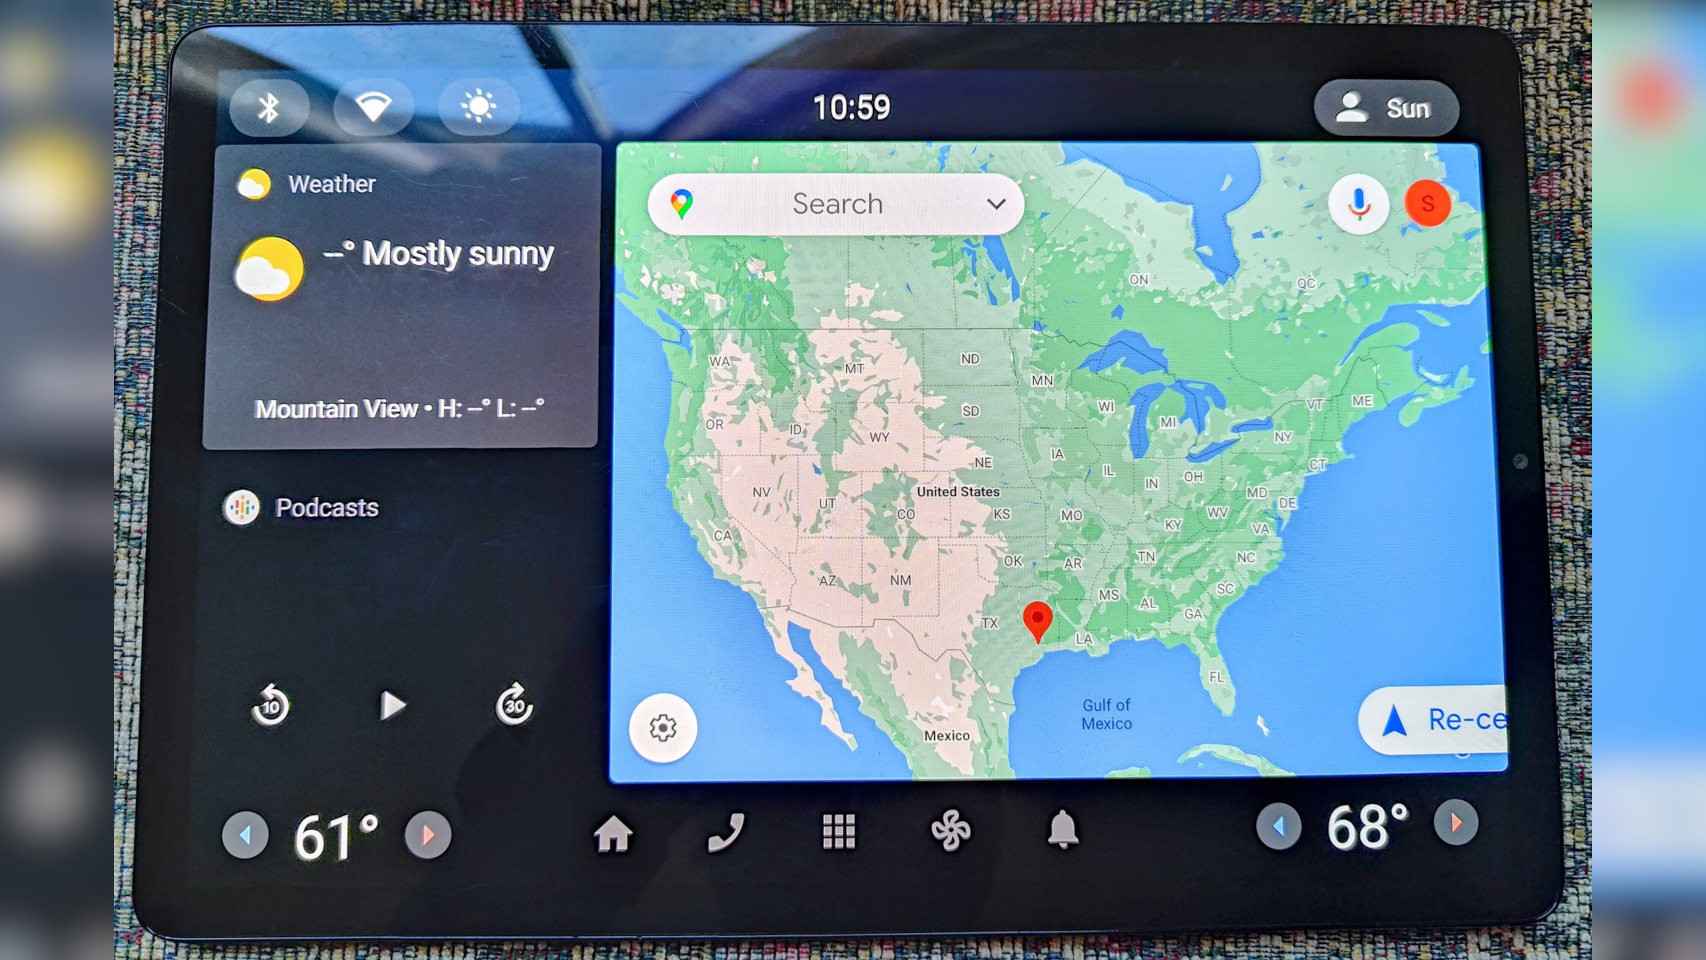 La pantalla de tu coche convertida en una tablet con esta perfecta  aplicación